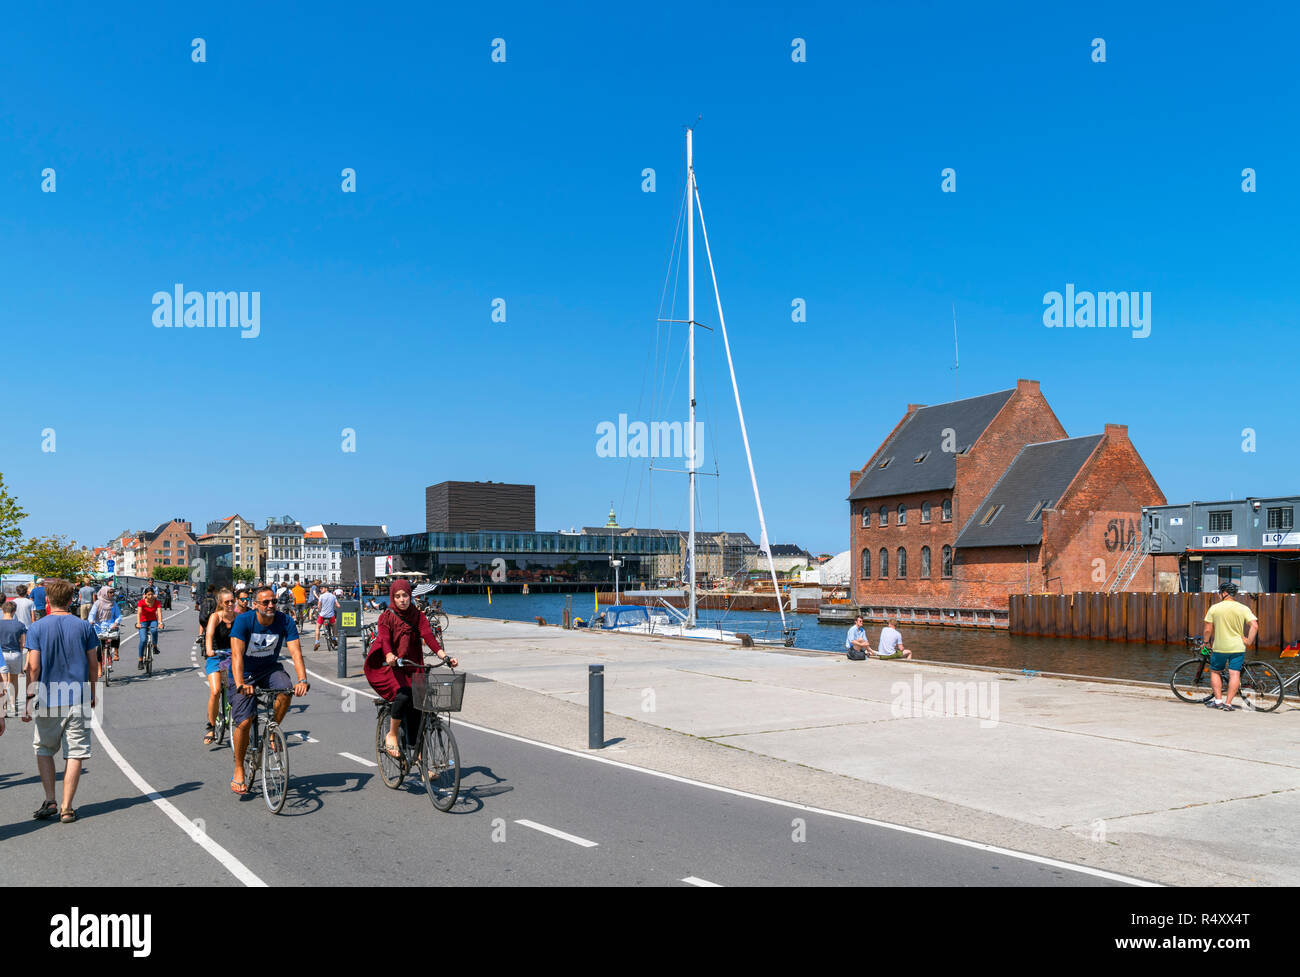 Inderhavnsbroen cycle path, Strandgade, Christiania, Copenhague, Danemark, Nouvelle-Zélande Banque D'Images